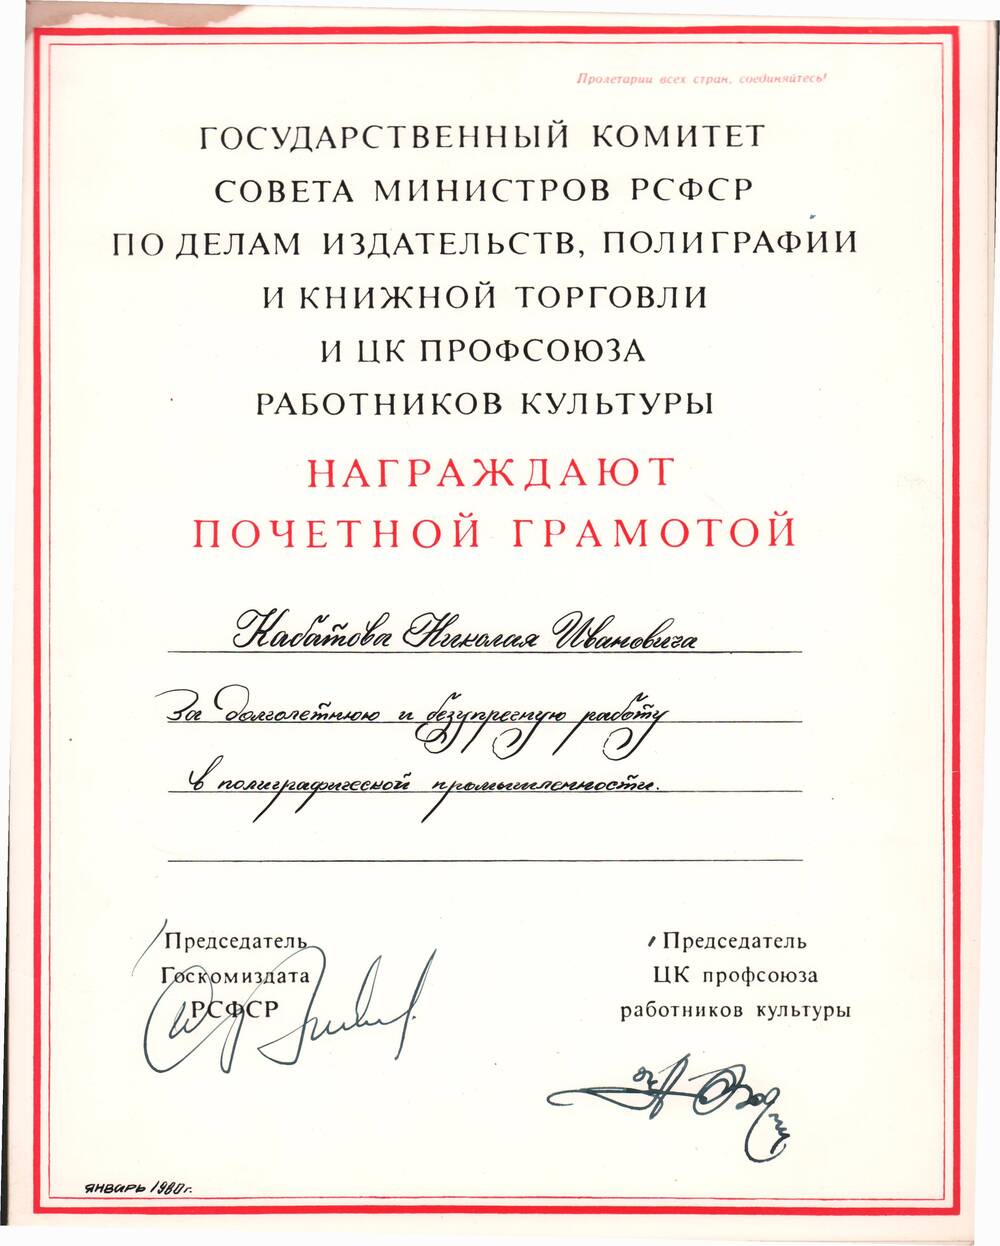 Почетная грамота за долголетнюю и безупречную работу  в полиграфической промышленности  от Председателя  госкомиздата РСФСР, январь 1980 года.